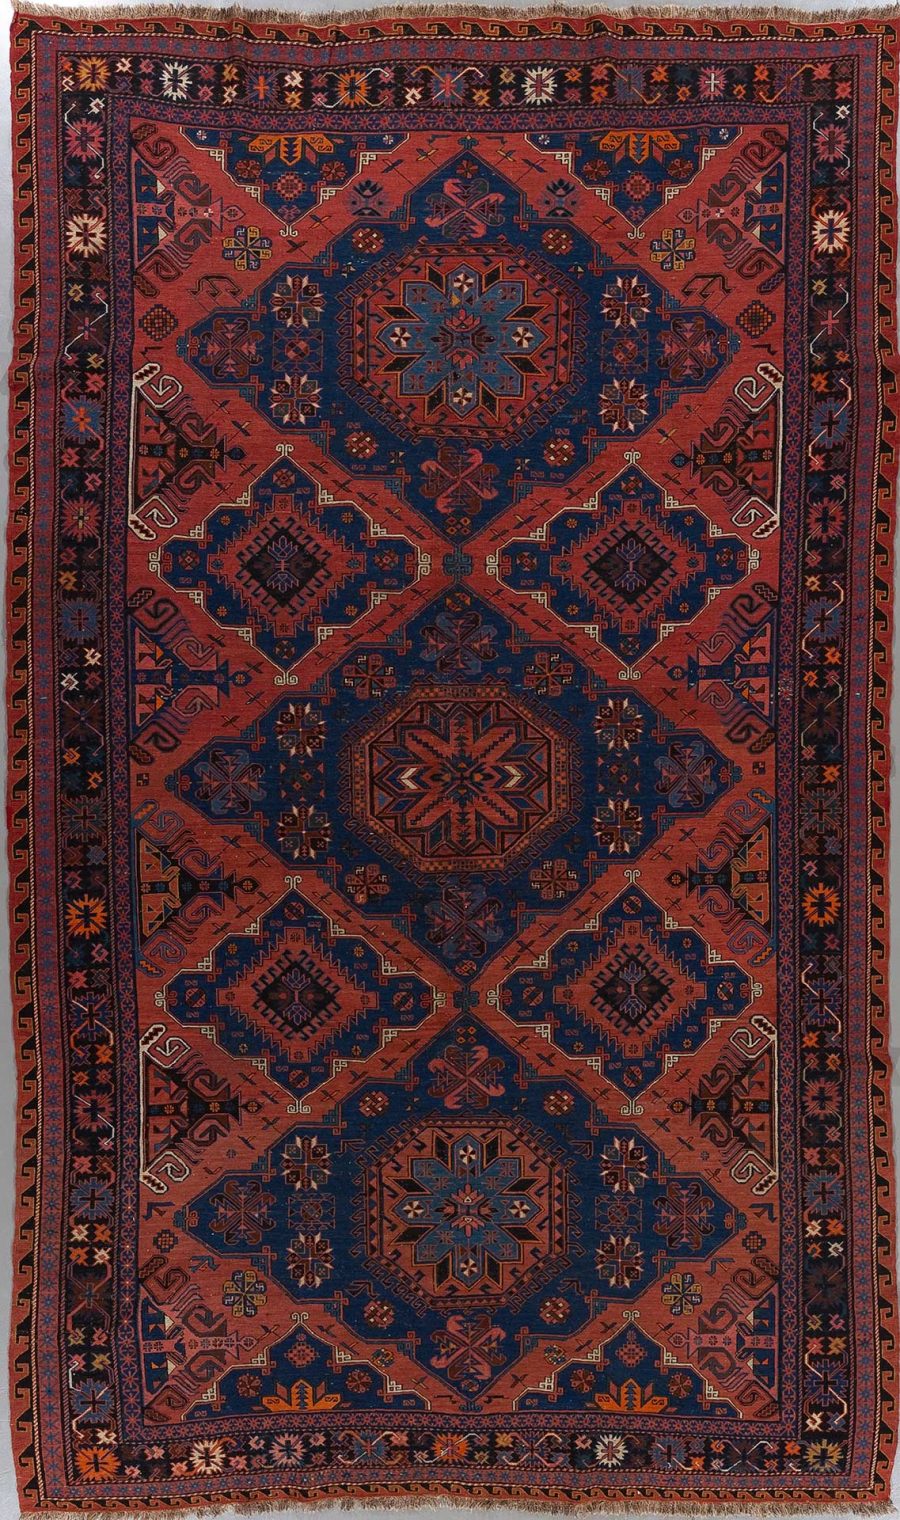 Traditioneller handgeknüpfter Teppich mit komplexem Muster in Rot-, Blau- und Beigetönen, Darstellung geometrischer Formen und floraler Motive, breiter Rand mit wiederholtem Muster und Fransen an den Enden.